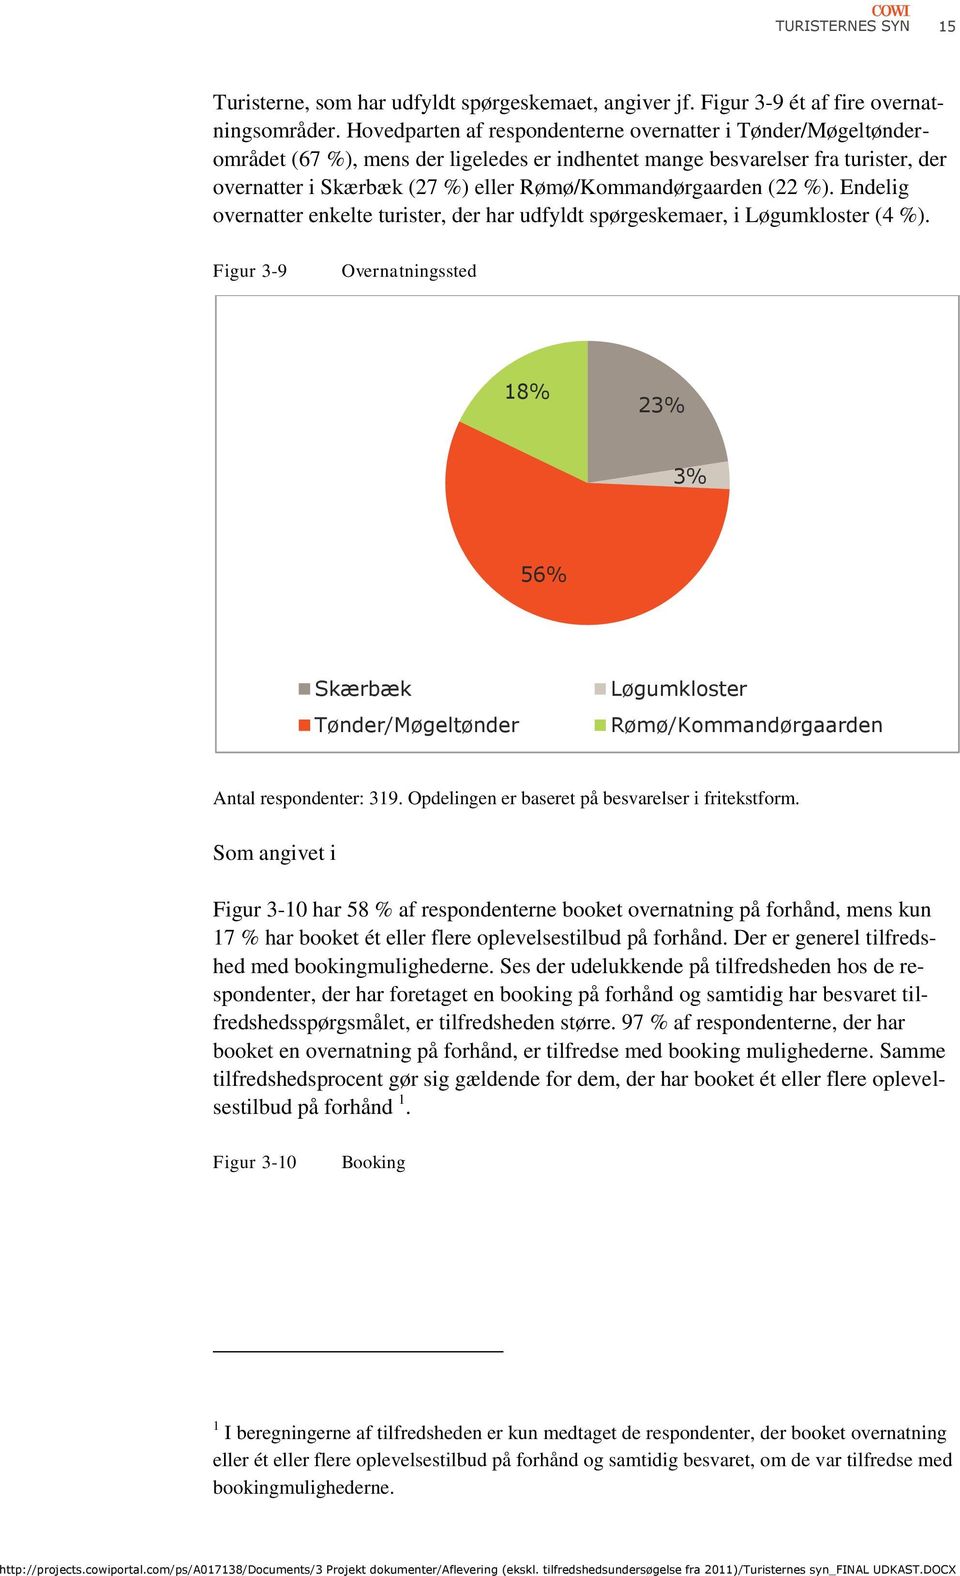 Rømø/Kommandørgaarden (22 %). Endelig overnatter enkelte turister, der har udfyldt spørgeskemaer, i Løgumkloster (4 %).